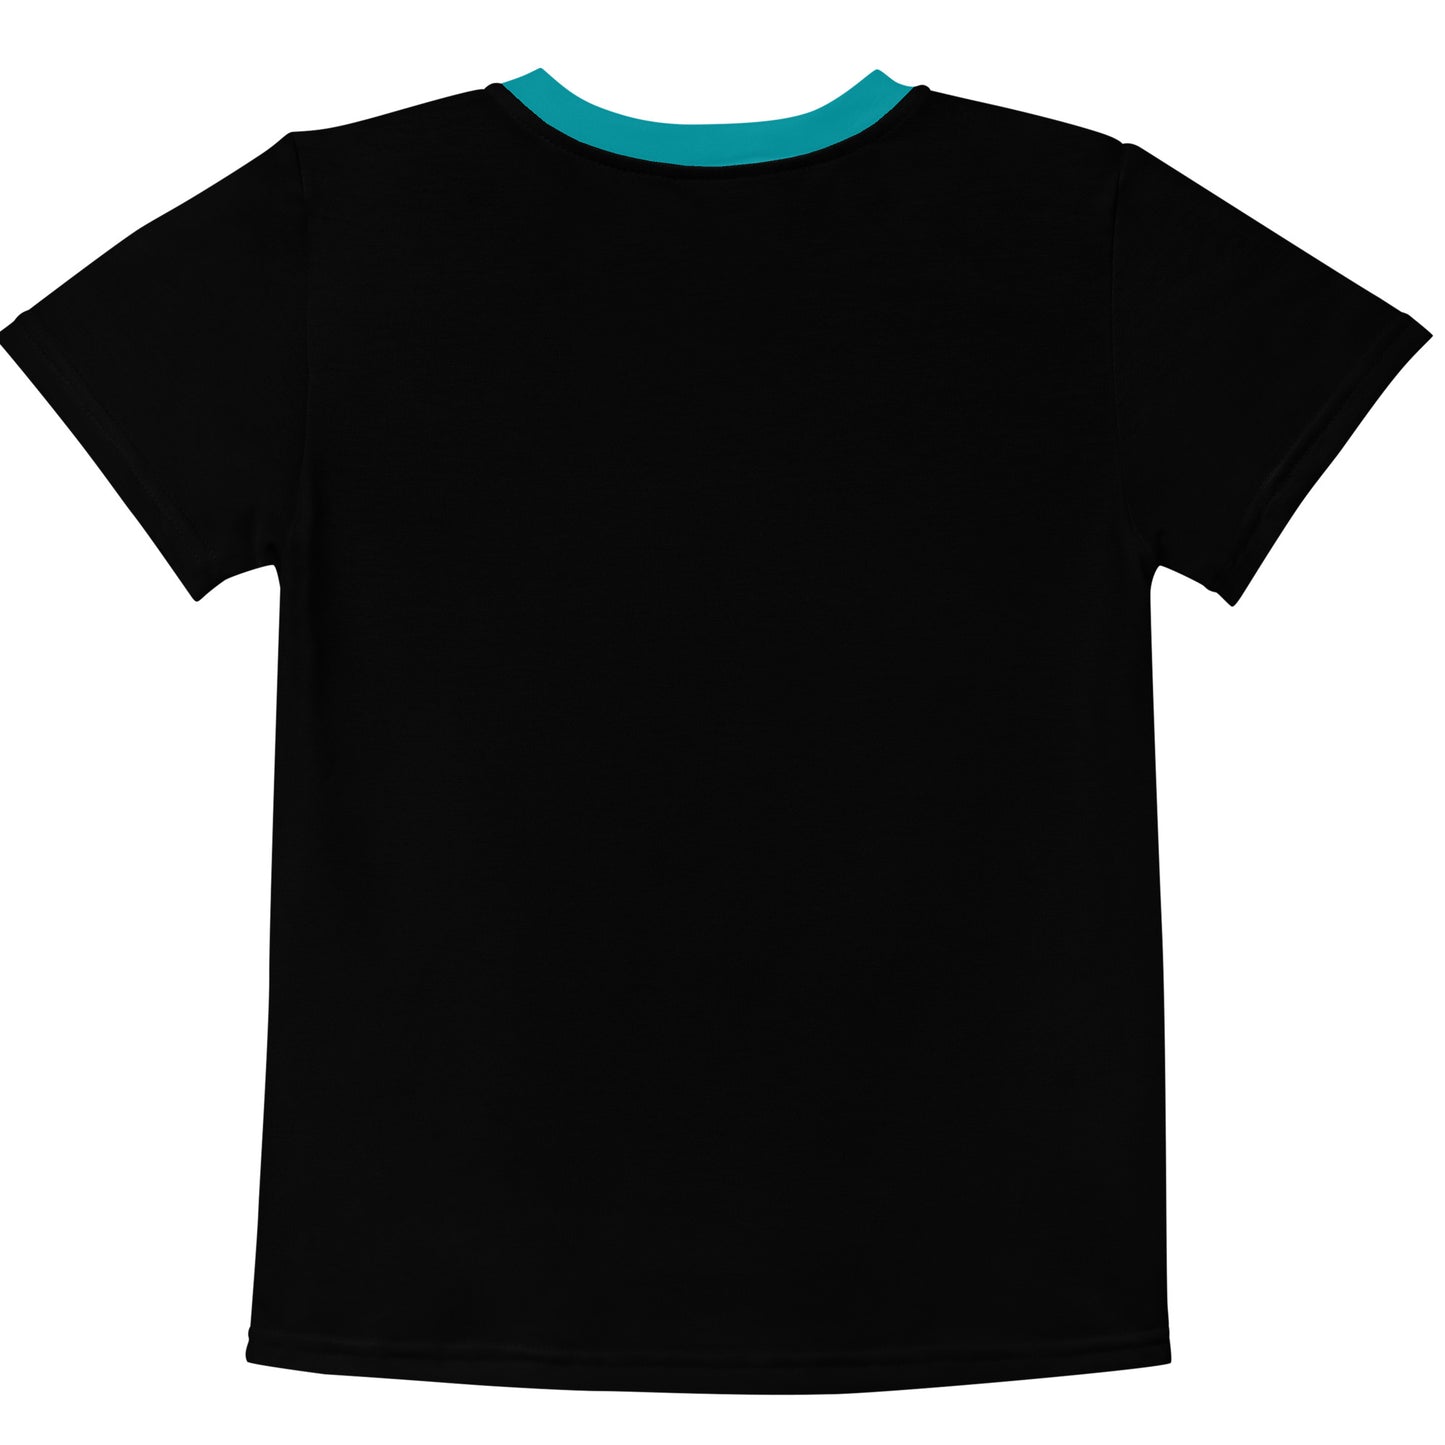 SVOLTA Kawaii Phoenix Cat Love T-shirt in Black, 2T-7 - Little Kids